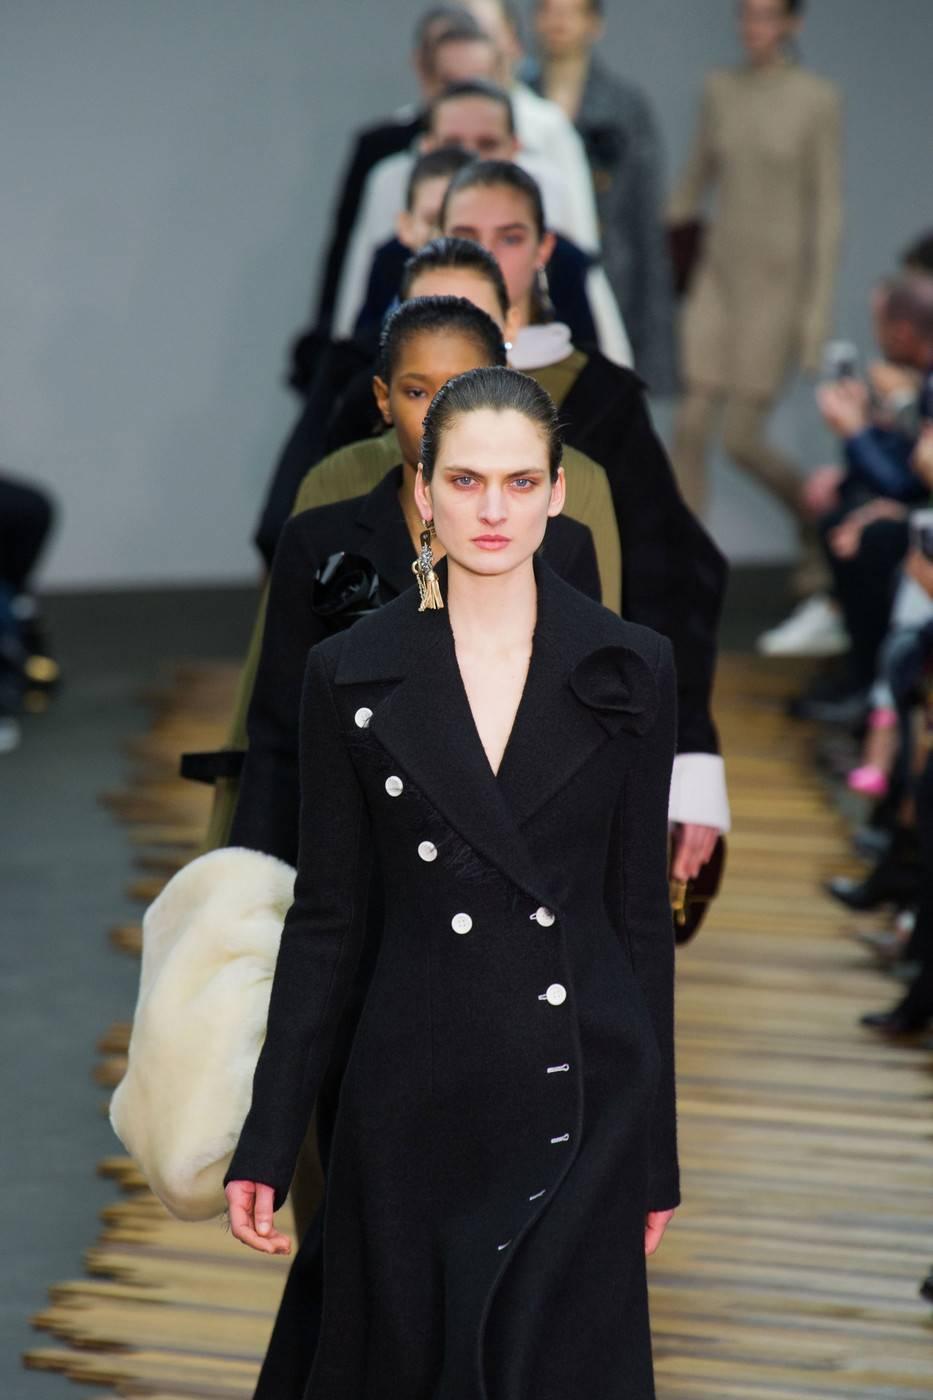 Women's unworn CELINE black wool runway coat with asymmetrical buttons - fall 2014